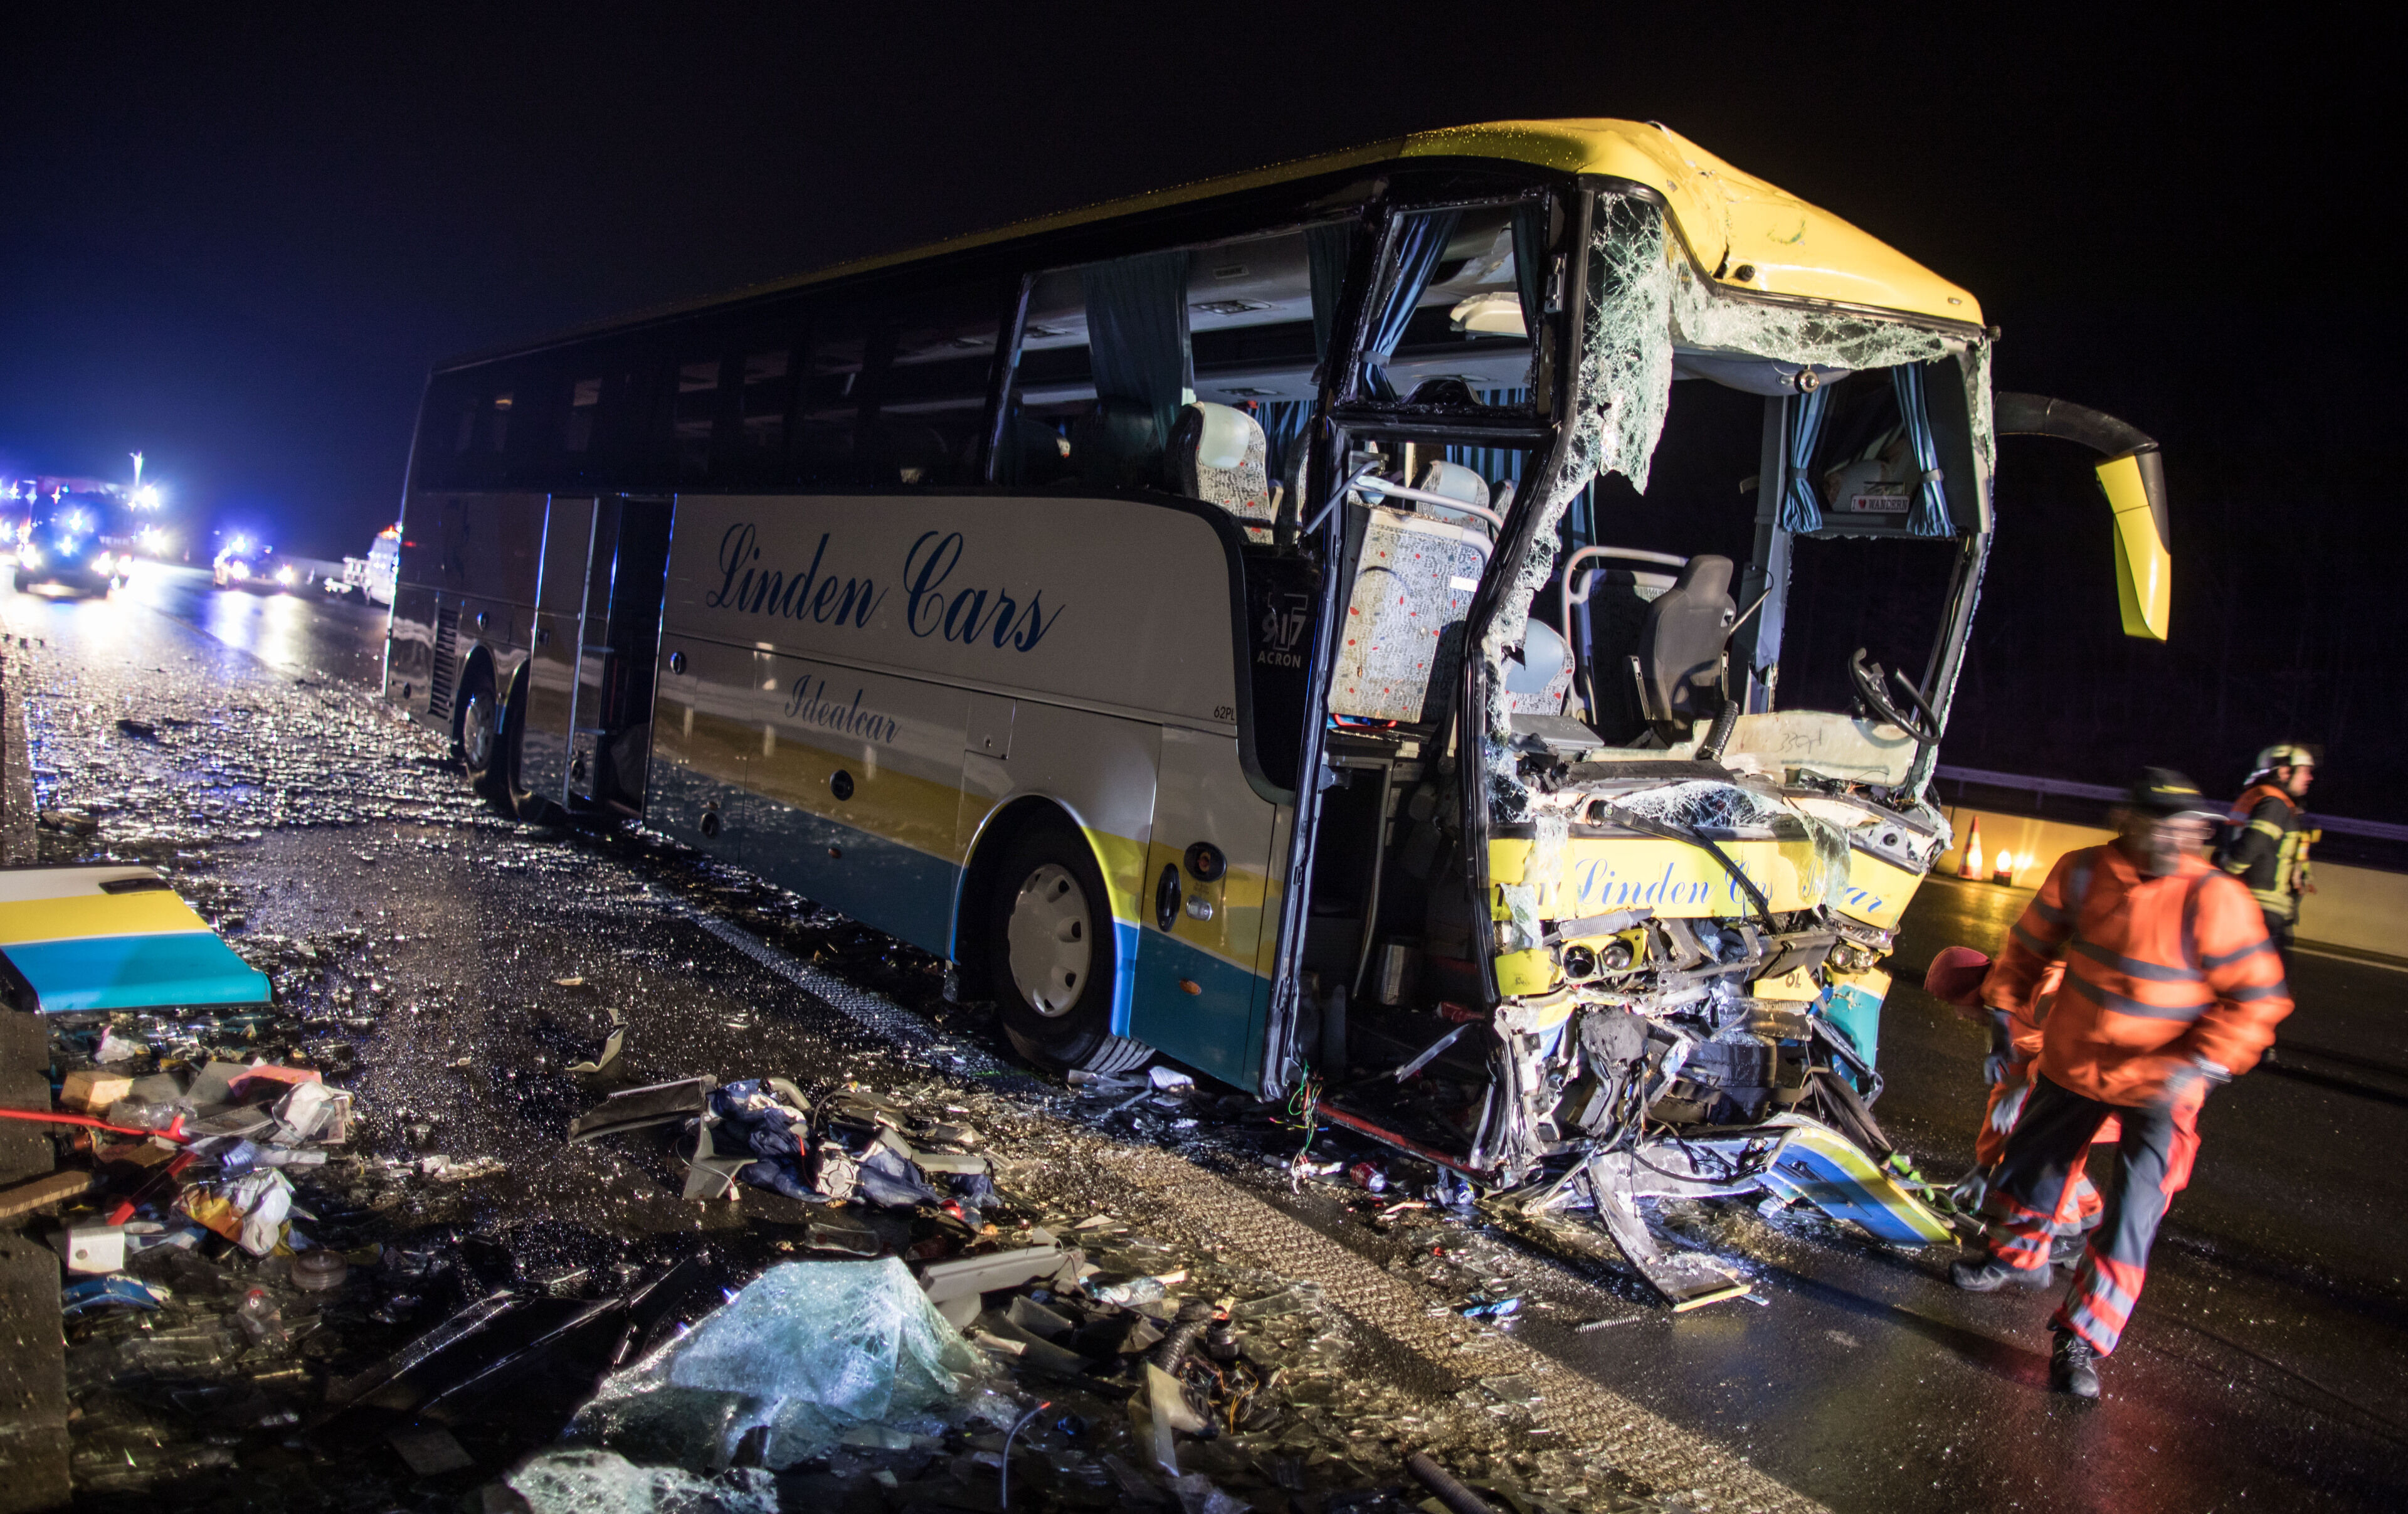 Waarnemen Voorstellen Verbeteren Passagier in verongelukte bus: "Het was voorbij in enkele seconden,  gelukkig had iedereen zijn gordel aan" | VRT NWS: nieuws